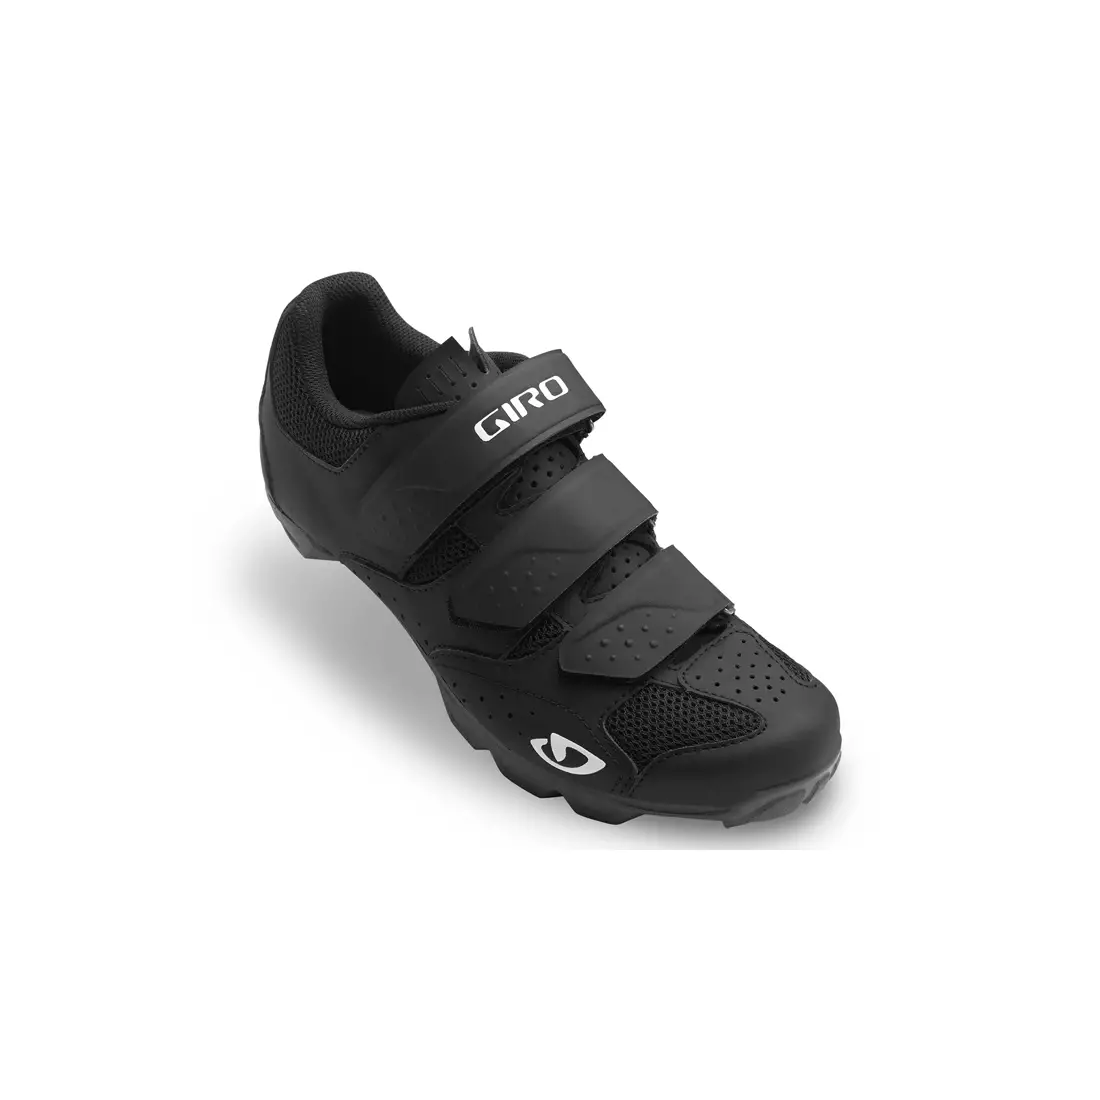 GIRO RIELA R II - Women's MTB cycling shoes black